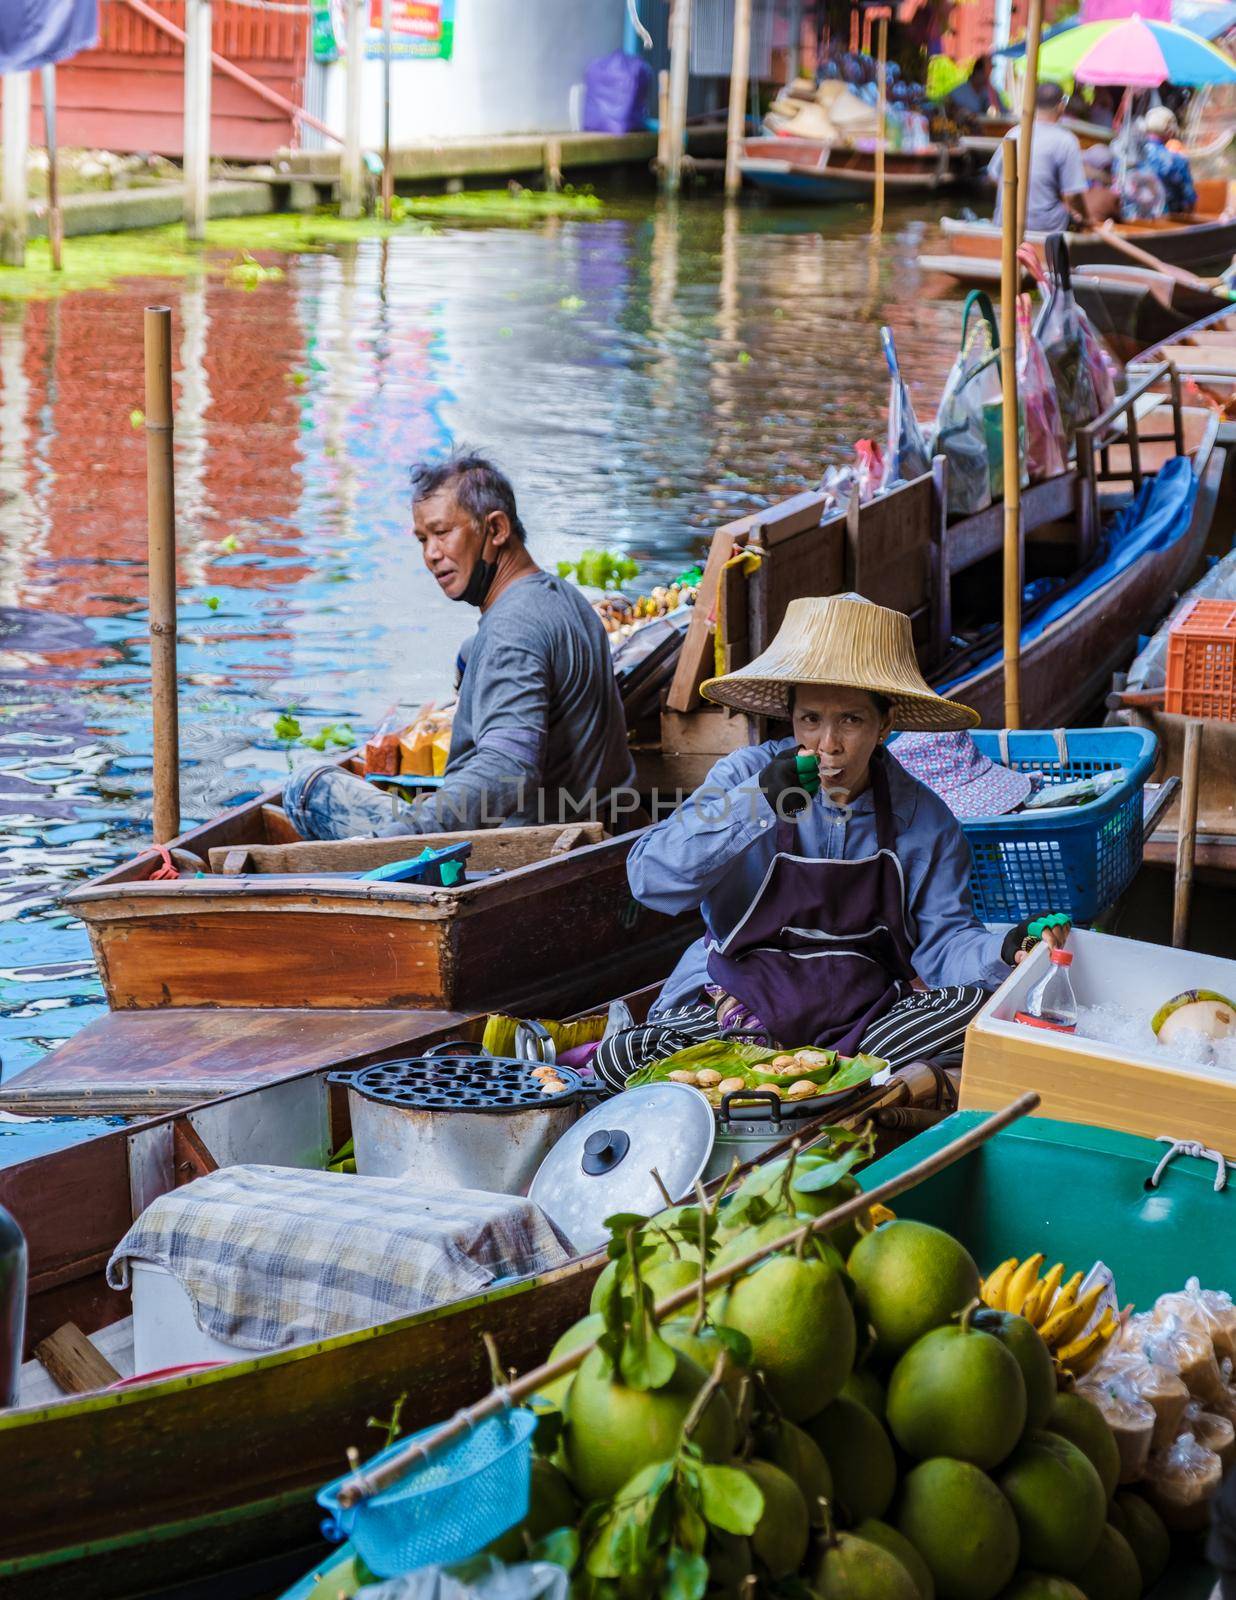 People at Damnoen saduak floating market, Bangkok Thailand by fokkebok